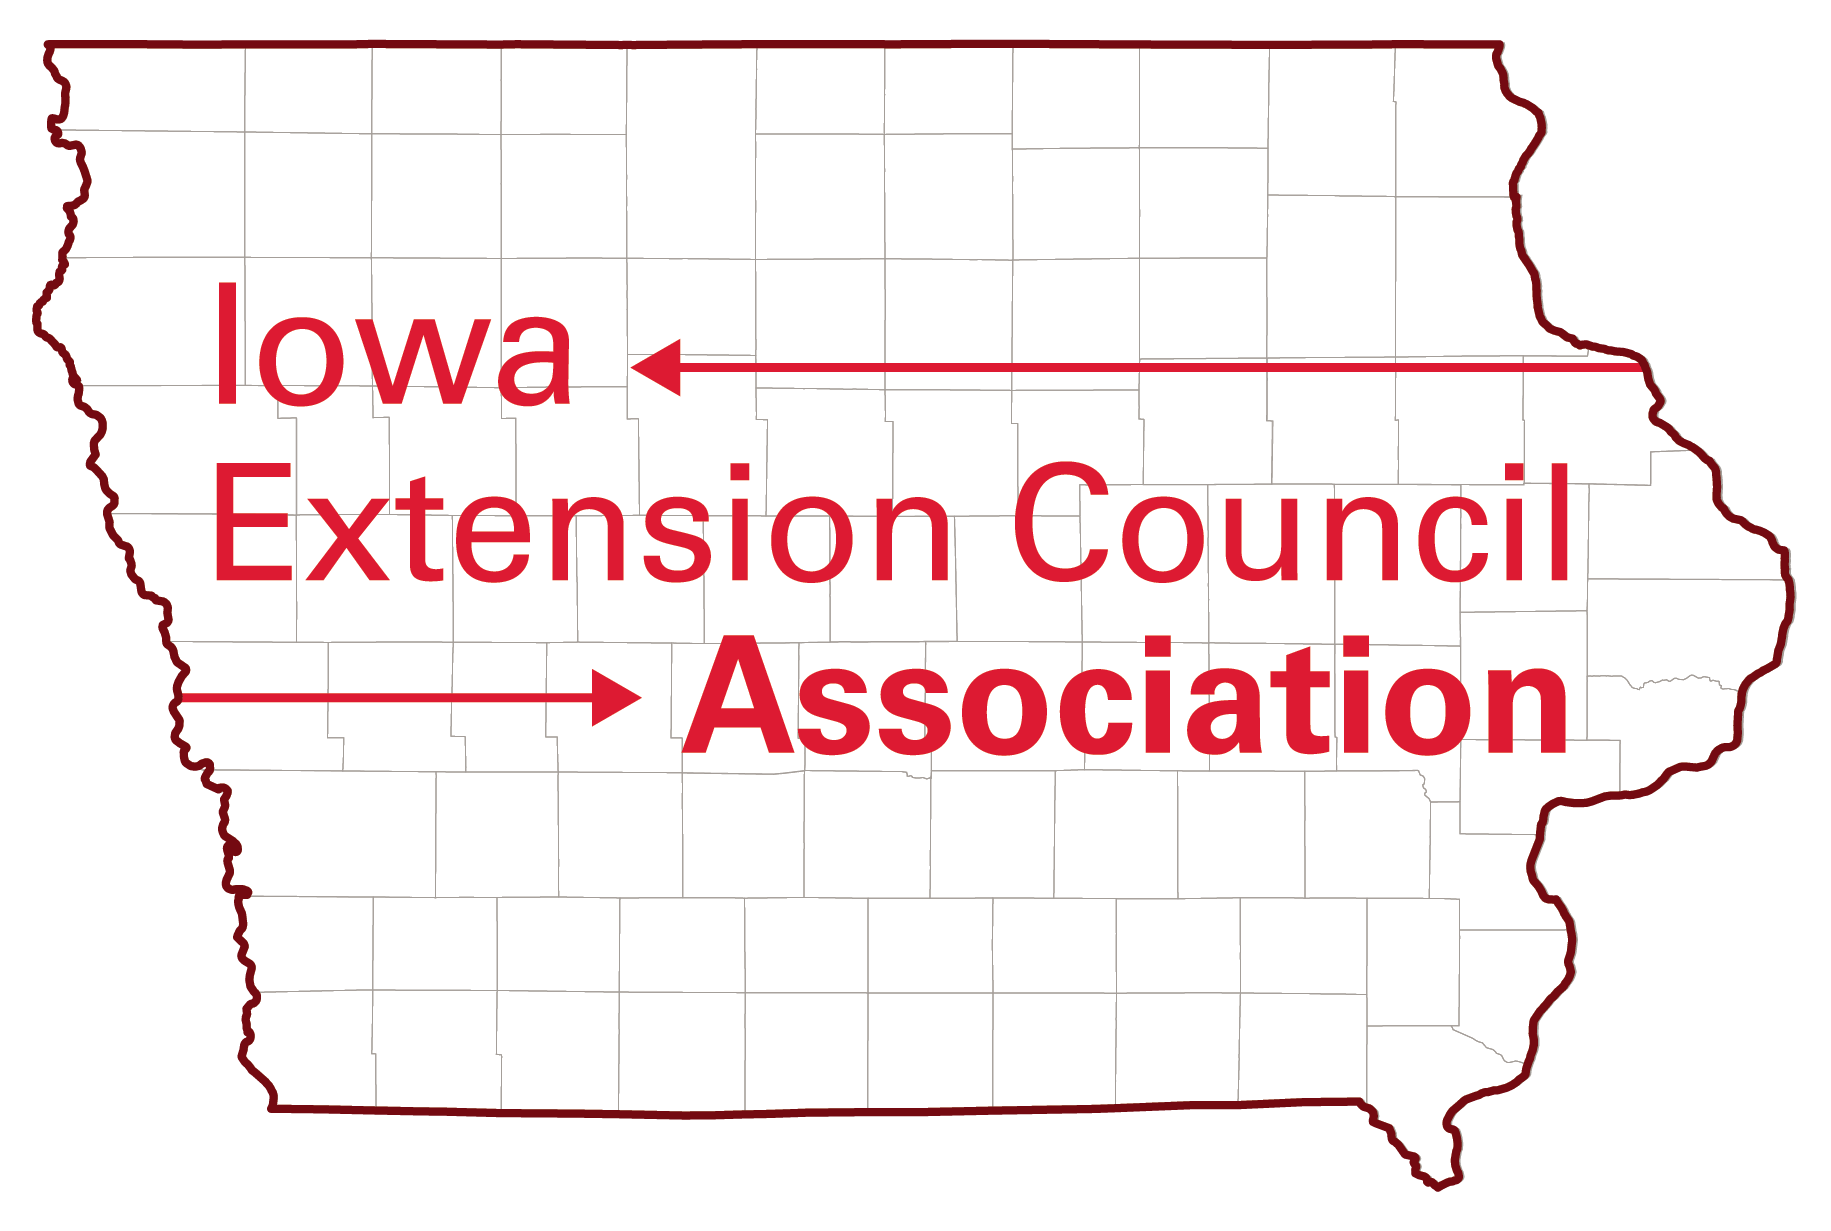 Iowa Extension Council Association